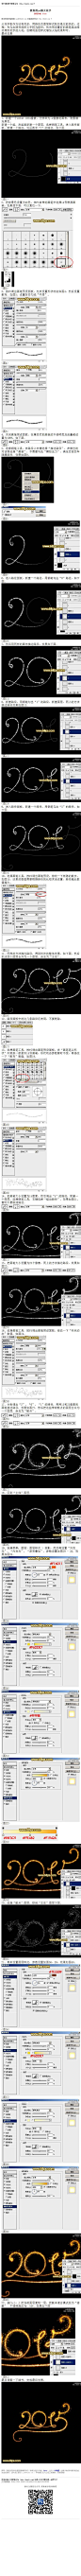 #普通字效#《教你用photoshop做火花字》 火花字制作方法有很多，用路径及图层样式制作是比较快的。过程：先勾出路径或把文字转为路径；然后用设置好的画笔描边路径得到初步的火花；后期用图层 教程网址：http://www.16xx8.com/photoshop/jiaocheng/2014/135325_all.html